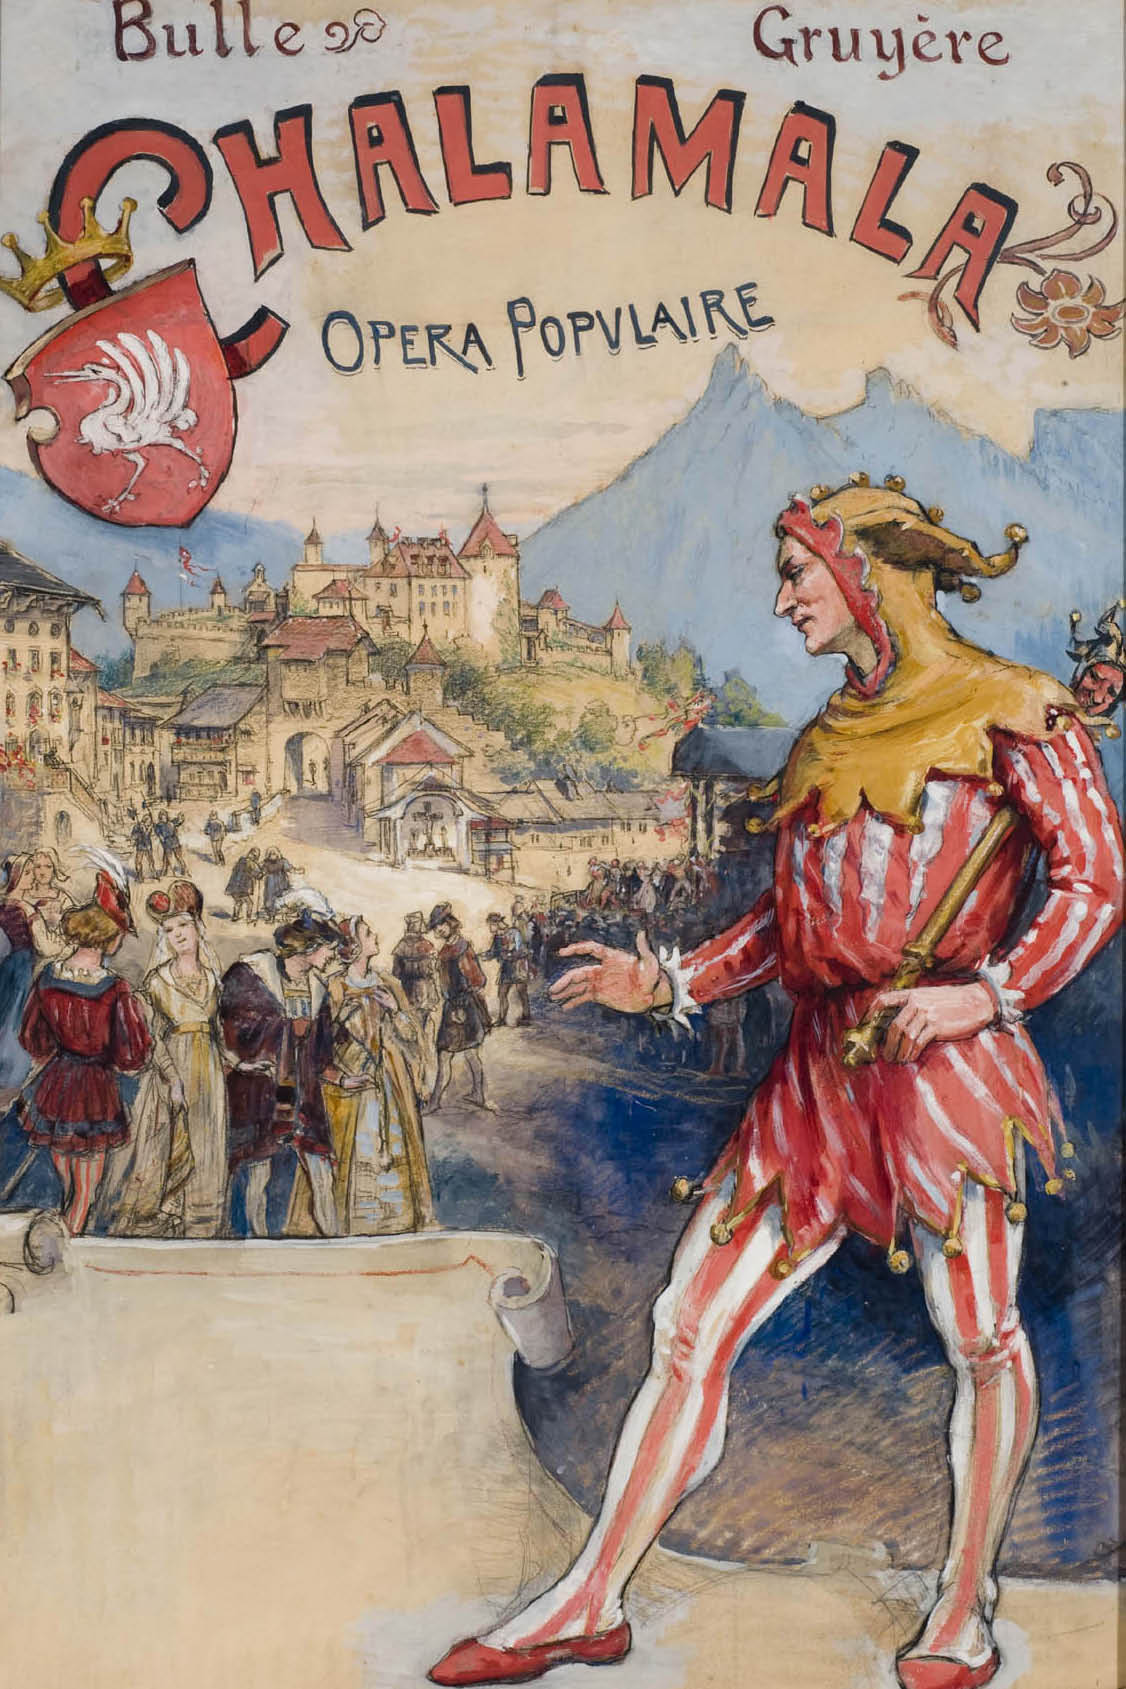 Chalamala, opera populara a Gruyères, sboz d'in placat per ina represchentaziun a Bulle, 1910 © Musée gruérien, Bulle